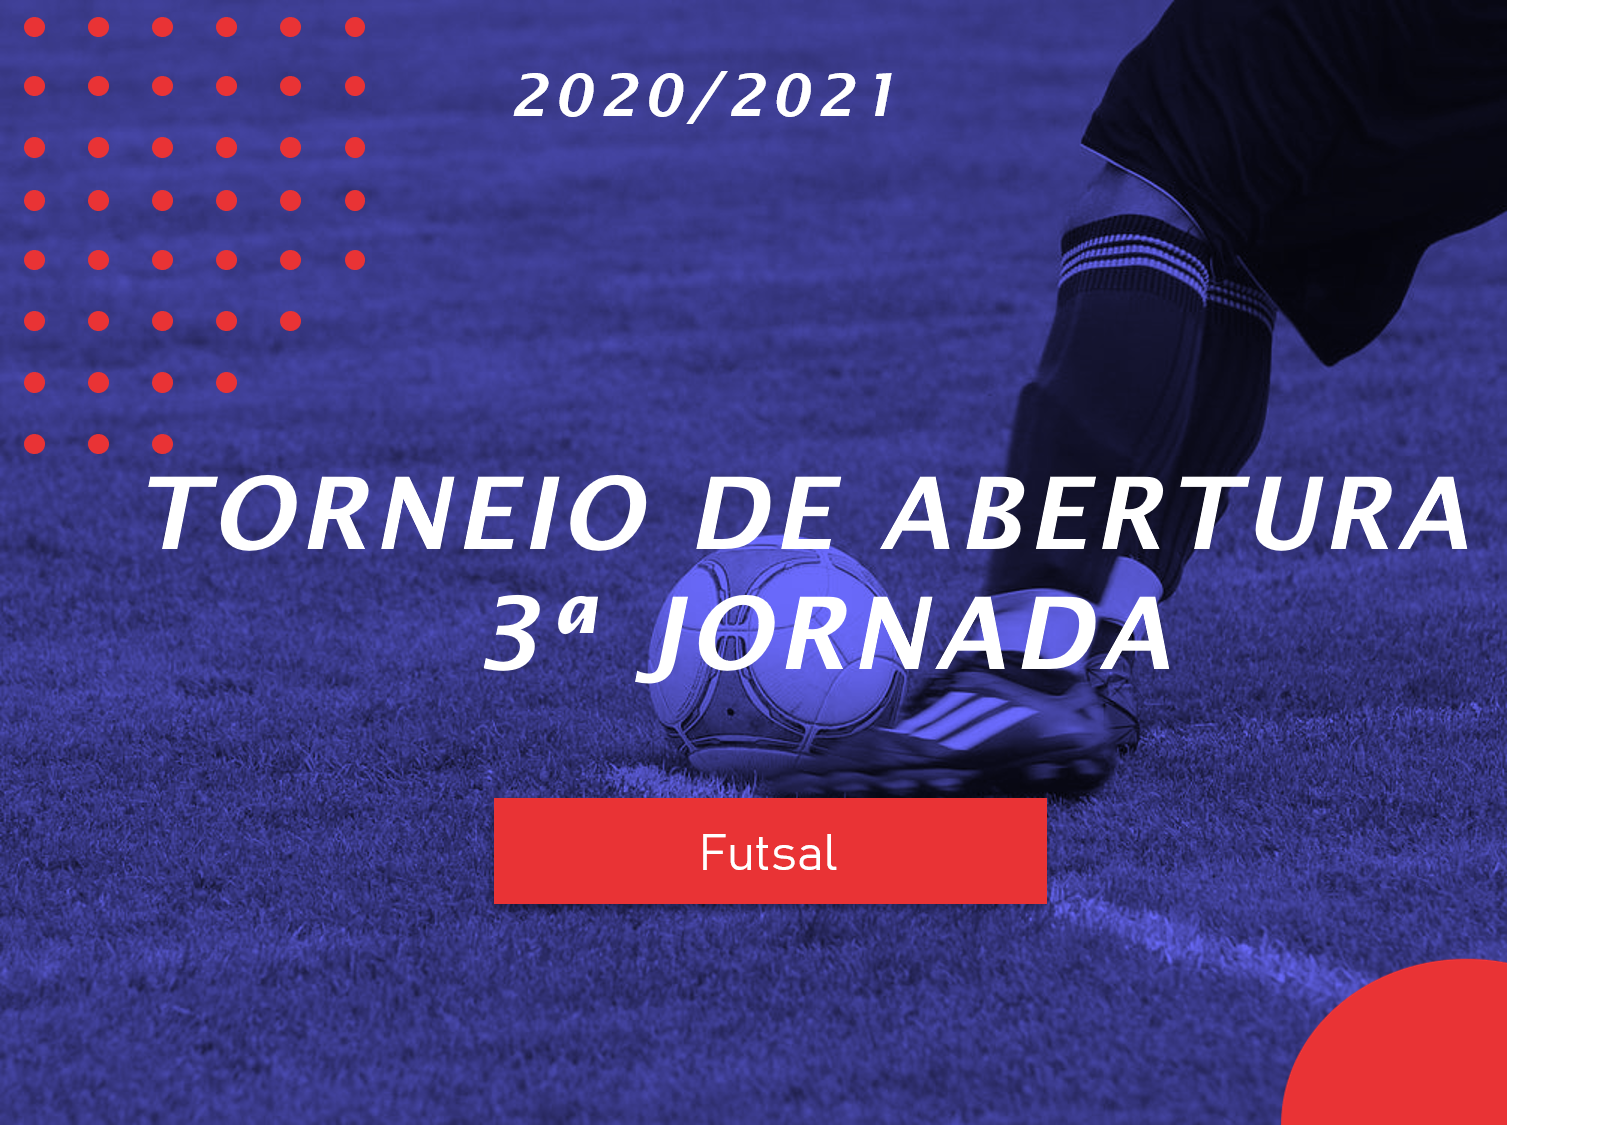 Torneio de Abertura de Futsal - 3ª Jornada - Antevisão